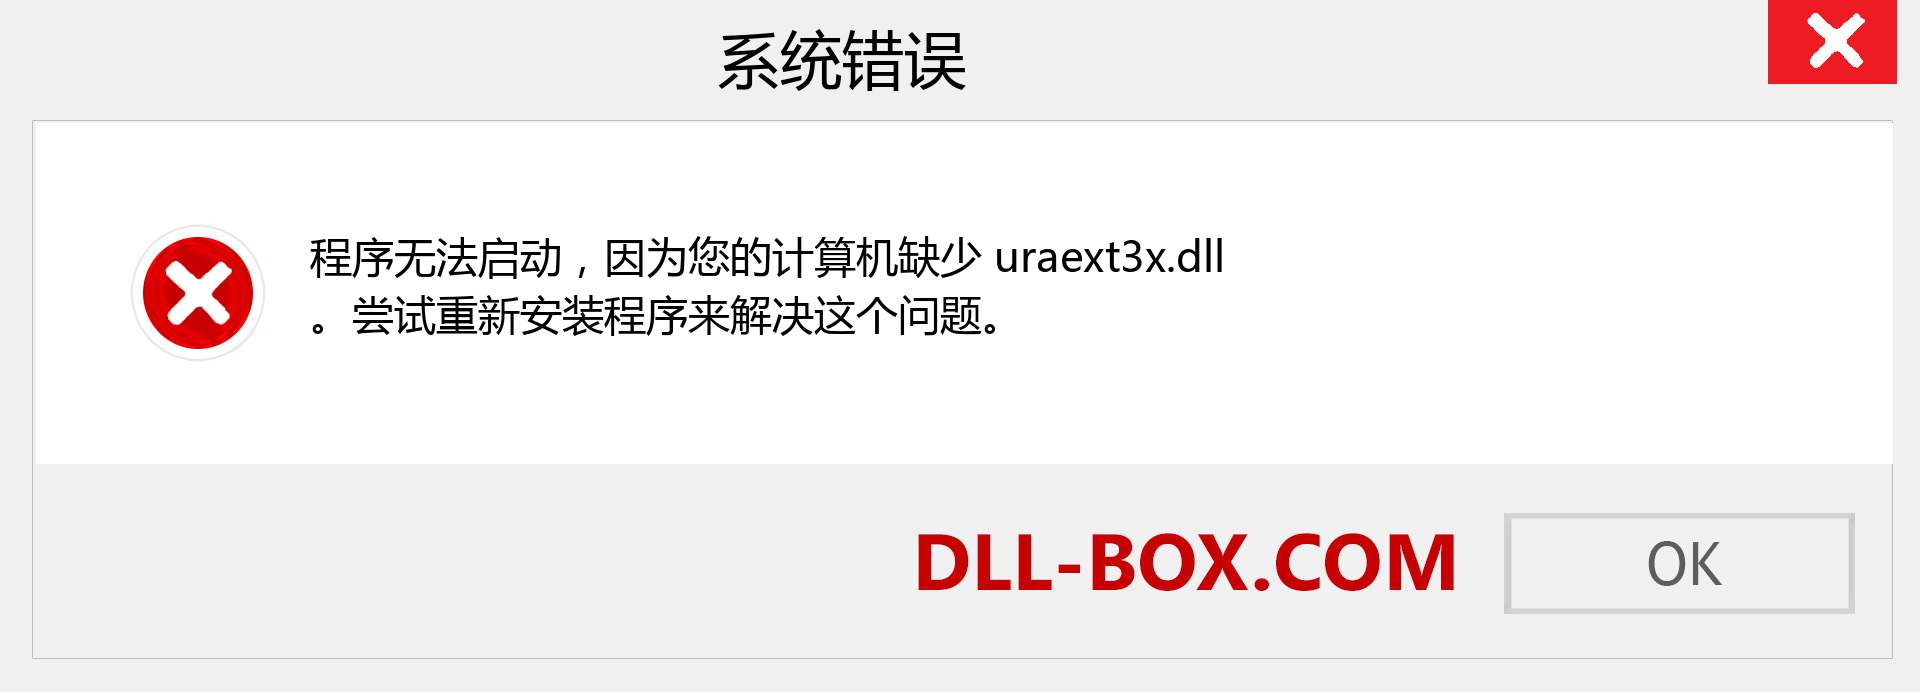 uraext3x.dll 文件丢失？。 适用于 Windows 7、8、10 的下载 - 修复 Windows、照片、图像上的 uraext3x dll 丢失错误